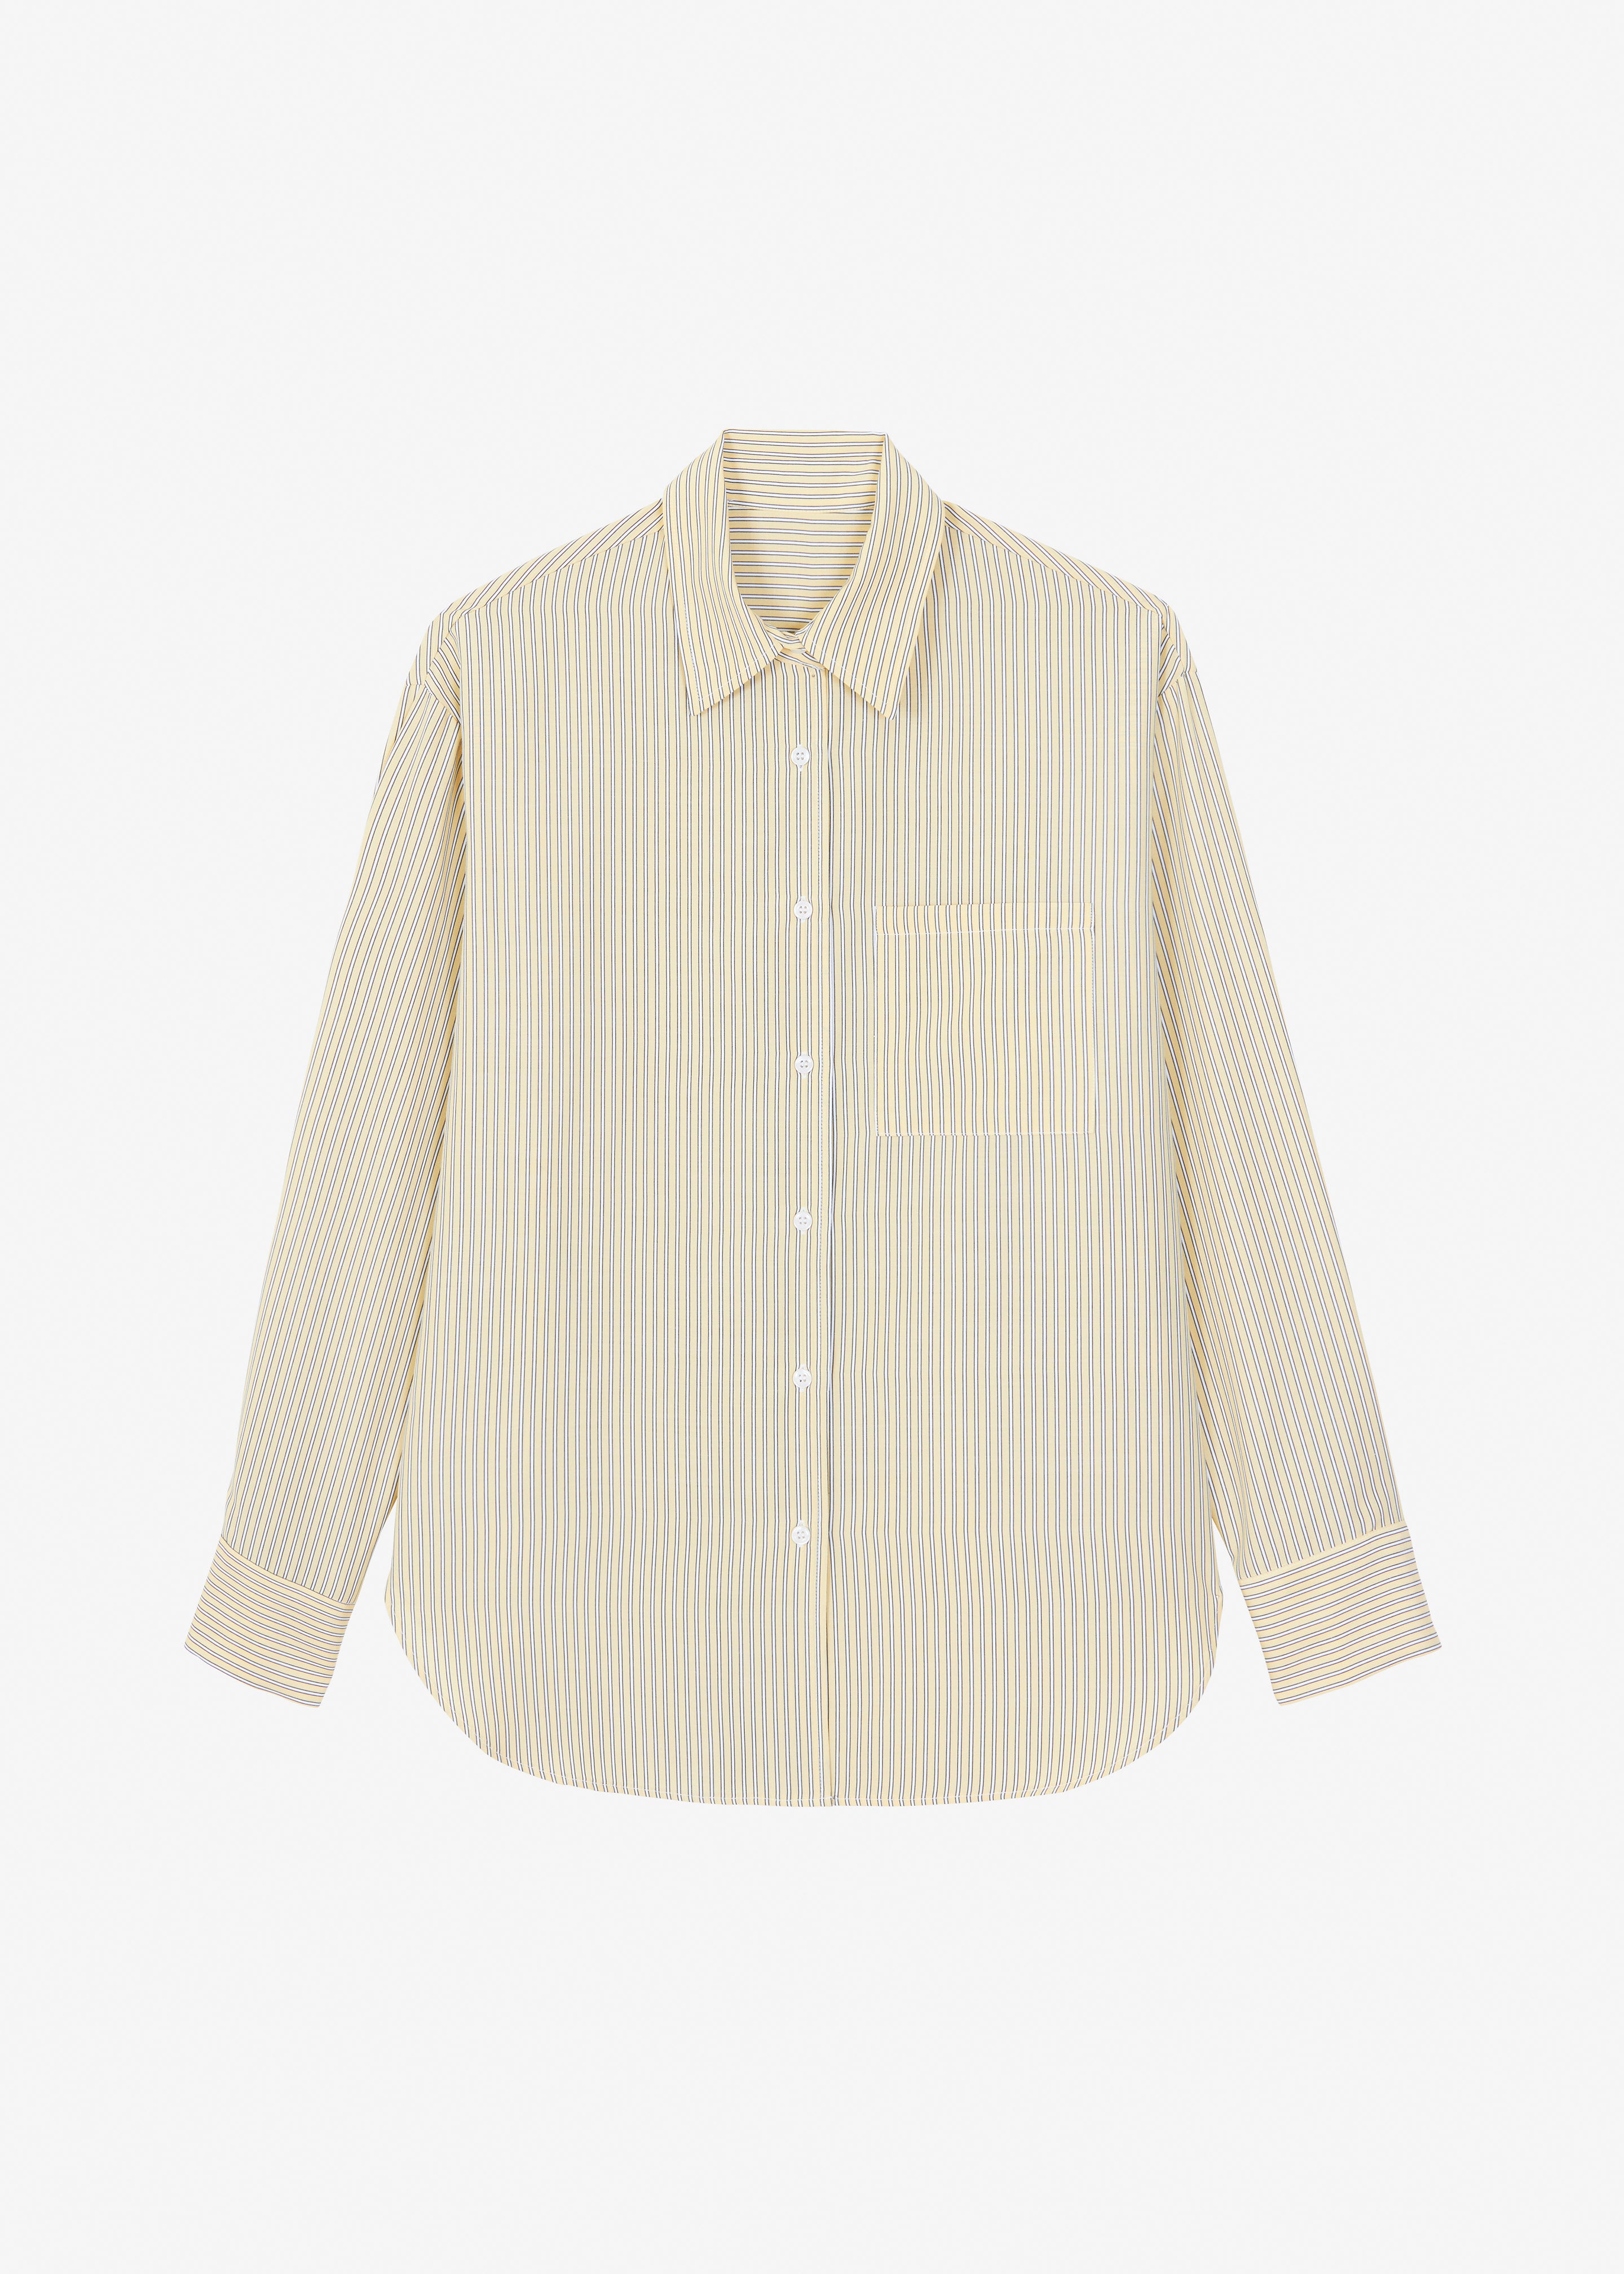 Lui Oxford Shirt - Pale Yellow/Black Stripe - 8